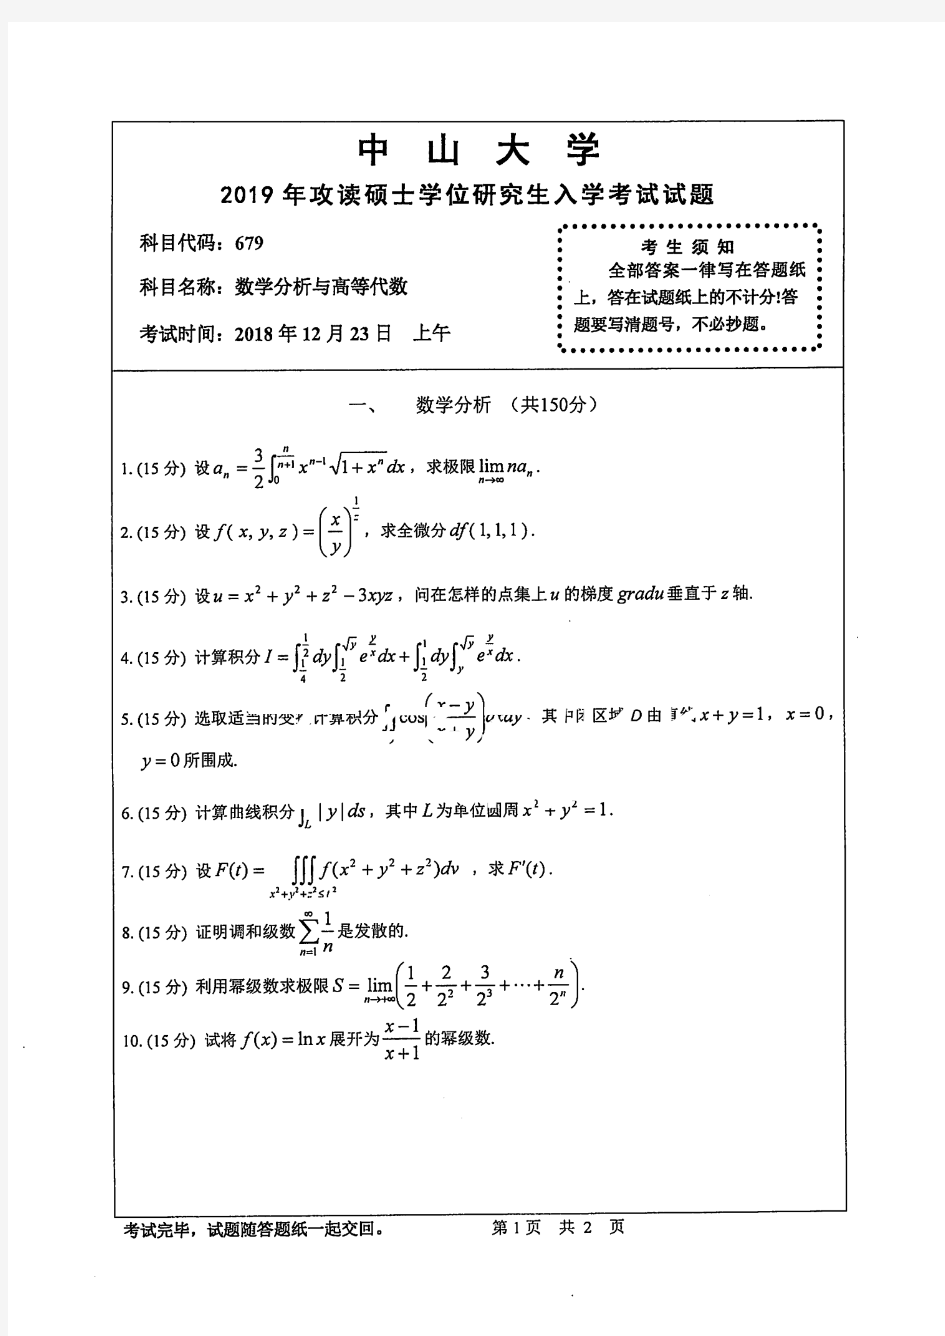 中山大学679数学分析与高等代数专业课考研真题(2019年)